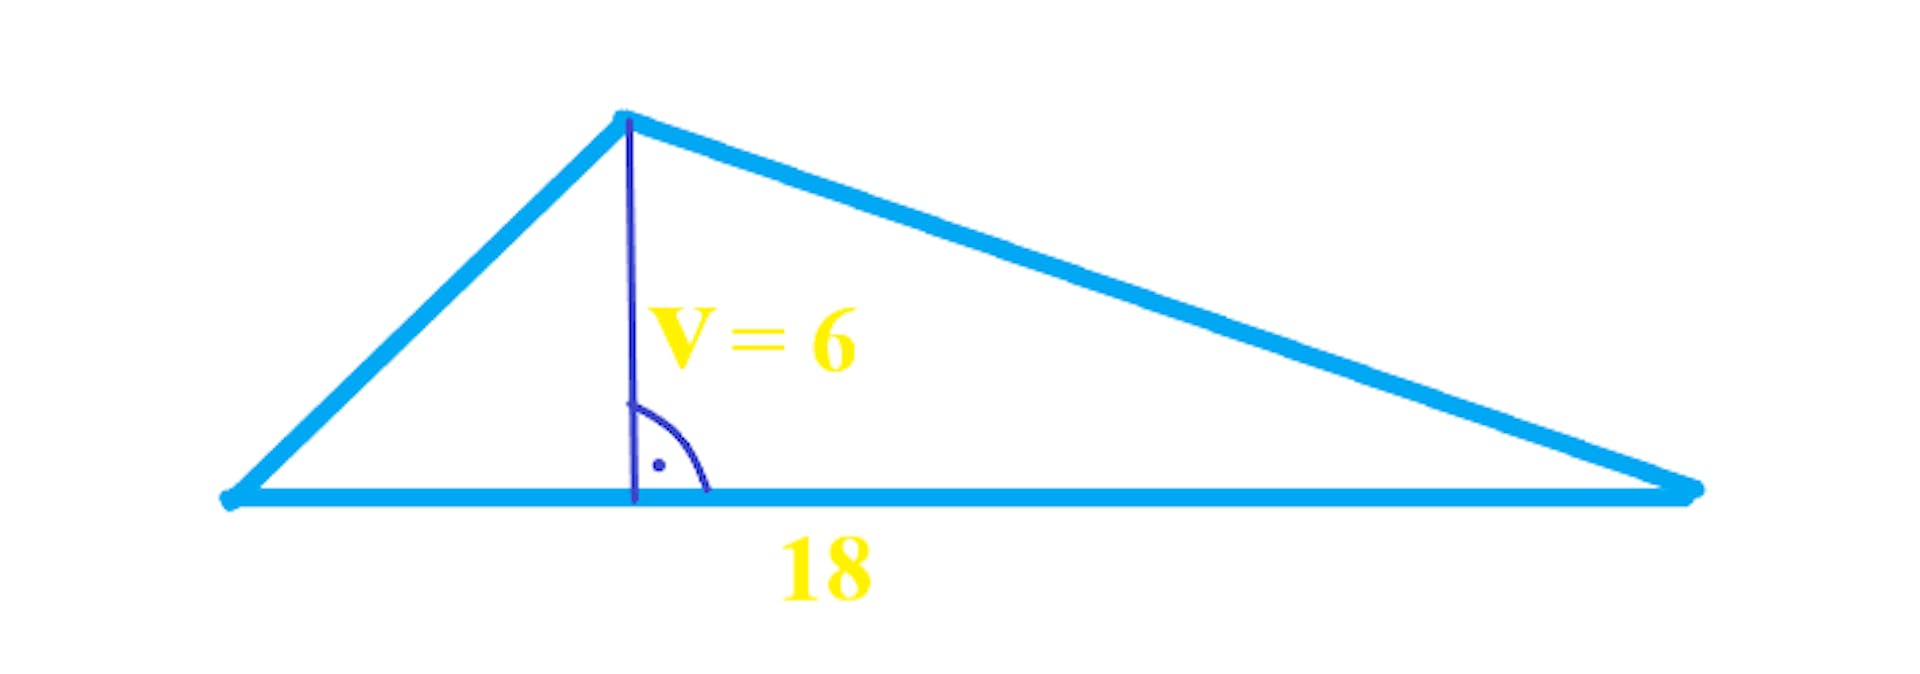 Trojúhelník s vyznačenou výškou